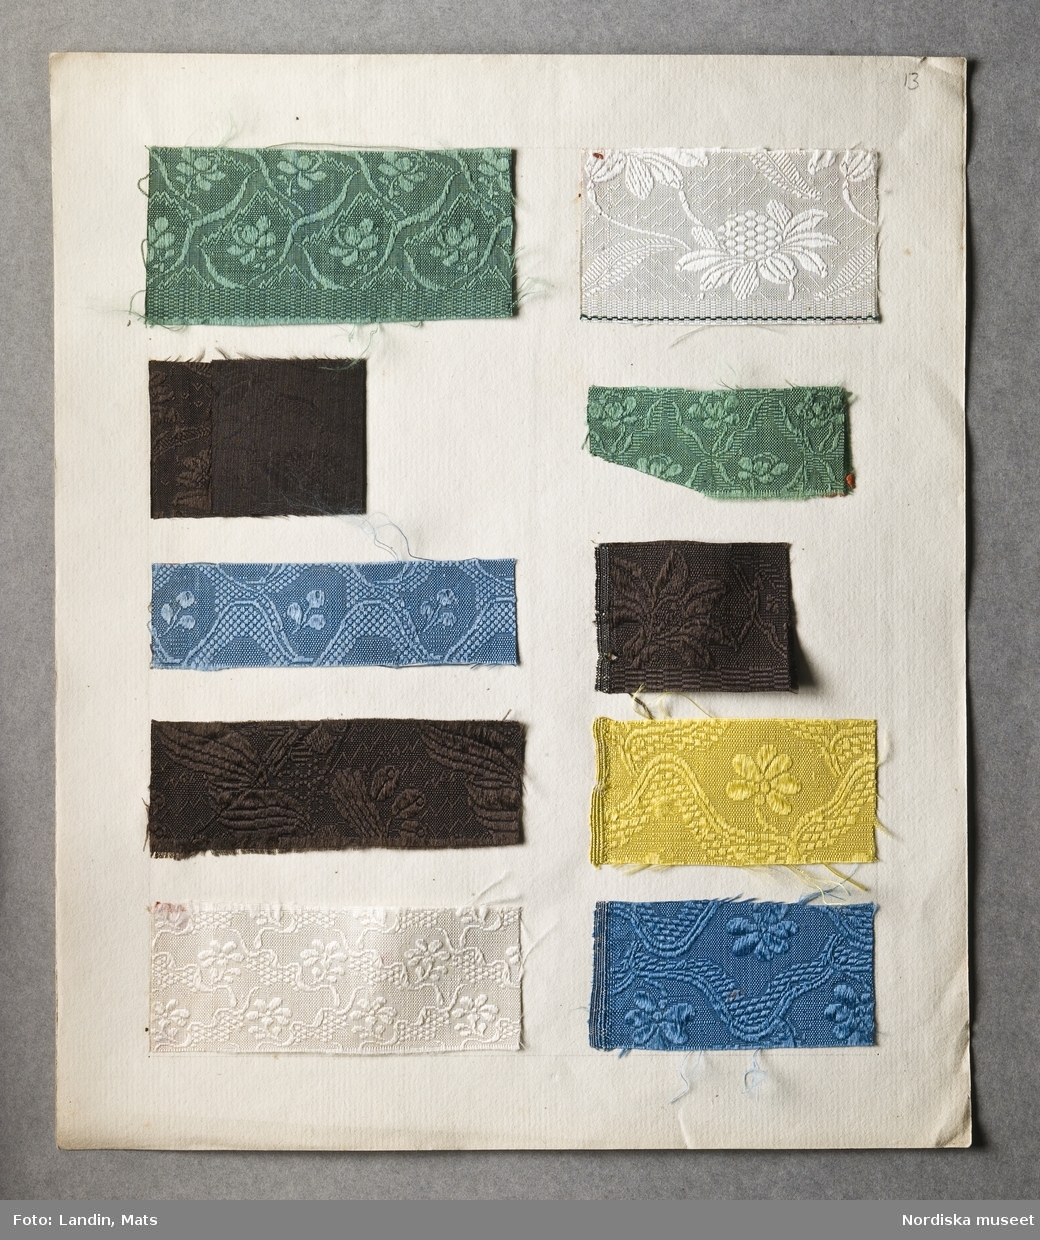 Svenska fabrikstillverkningar 1766, provsamling omfattande 385 vävda prover daterade mellan 1758 och 1775. Förvarade i en portfölj av papp klädd med marmorerat papper i grönt, omknuten med rosa sidenband s.k paduband, 11 mm brett. Innehåller 38 lösa blad med guldsnitt i kanten. Av dessa är tygprover fästade på 33 blad, 2 blad har enbart text, 3 blad är tomma; på dessa urskiljer man vattenmärke, bestående av sköld med snett band och krönt av fransk lilja. Dessutom är 2 lösa blad av annat format med tygprover inlagda i portföljen.
Titelbladet med handskriven text:" En del af Kunskapen. Sw. Fabriquerne i ordn. Saml af Ad. Modeer."
Varje blad med prover är försett med en ram av blyertsstreck inom vilka proverna klistrats. Under nästan varje prov står en kort text med blyerts, som uppger benämning på tyget, tillverkare och pris. Ibland förkortat till tre gånger utskrivet do (dito). priset uppges i daler kopparmynt. Bladen har numrerats med blyerts vid katalogiseringen i museet. Littereringen av proverna är inte utskriven här i katalogiseringen, men går uppifrån och ned, först vänster spalt, sedan höger.
Blad 1-20 innehåller 175 sidenprover.
Blad1: Text: "Furubom & Bergers, 
A. Dalmanssons, Ekstedt & Collanders, C.J. Ströms, A. Westmans, J.Silanders, S. Wieses och J.A.& S. Alnoors Fabriquer år 1766". Silkessammet, 12 prover.
Blad 2: Sidendrouguet, 7 prover
Blad 3: Blomerade sattiner, 9 prover
Blad 4: Sidendrouguet, 6 prover
Blad 5: Bordaloux, 12 prover
Blad 6: Diverse sidenprover, 11 st
Blad 7: Oskuren sammet, 5 prover+ ripslikn. prov
Blad:8 Silkeflor, 9 prover
Blad 9: Sidenprover, 3 tunn rips + 8 damast
Blad 10: Mönstrade halvsidentyger, 10 prover
Blad 11: Race de Sicile, 6 prover
Blad 12: Småmönstrade siden, "drouguets liserés", 7 prover
Blad 13: enfärg. sidendrouguet, 10 prover
Blad 14: Sidendrouguet, 10 prover
Blad 15: Sidensatin, 10 prover
Blad 16: "Slät sattin, sarge, blommerad sarge", 6 st
Blad 17: "Carlé, floret tyg" mm. 10 prover
Blad 18: Randig och rutig flerfärgad taft, 6 prover
Blad 19: Sidentaft, 12 prover
Blad 20: Sammet och plysch
Blad 21-30 innehåller 141 ylleprover tillverkade i Stockholm 1766.
Blad 21-22 Kamgarnsprover, 21+21 st, olika kvalitetsbenämningar.
Blad 23. Tvåfärgad ylledamast, 6 st
Blad 24: Enfärgad ylledamast, 7 prover
Blad 25: Kamgarnsvävnader, randiga, 6 st
Blad 26: diverse ylletyger, 7 st.
Blad 27-29: Kläde, 21 prover på vardera blad,
Blad 30: Yllevävnader fr. J.W.Helledays Fabrique, 7 st
Blad 31: Ylletyger, tillv. i Köpenhamn 1758
Blad 32: Kamlotter, 11 prover fr. Köpenhamn
Blad 33: Diverse prover, 9 st belönade av Patriotiska Sälllskapet.
Blad 34-37: utan tygprover.
Blad 38: Löst dubbelvikt ark med kamgarns- och sidenprover, uppenbarligen engelsk tillverkning, 22 prover schalonger och sattiner.
Blad 39: Löst dubbelvikt ark m. 2 grova vävnadsprov av nässelfiber resp. humlerevor. "Inl. af doctor Sparrman".
Proverna samlade och uppklistrade av Patriotiska Sällskapets sekreterare Adolf Modéer, 1766, som prov på vad svenska väverier kunde tillverka. Som ett led i en merkantilistisk strävan att stävja import och uppmuntra slöjder, kunnighet och lyx för att främja landets ekonomi. Att det är han själv som klistrat in de små proverna och skrivit in uppgifterna bevisas av att de är skrivna med samma vackra och lättlästa handstil som Patriotiska sällskapets stadgar 1772. För att främja textiltillverkningen var det rimligt att undersöka på vilken nivå den stod, vad som presterades. Kanske var detta Modéers syfte. De enskilda fabrikerna tycks inte ha varit det viktigaste, det var de olika produkterna, hur de var vävda, mönstrade och vad de kostade som han vill illustrera. Han för ihop samma slags vävnader från flera olika fabriker, och genast ser man att konkurrensen varit stenhård. Så lika är ofta proverna både till kvalitet, mönster och färg. Hur Modéer tänkt sig att hans samling skulle användas är okänt.
Genomgångna av Elisabet Hidemark 2007.
/Berit Eldvik 2008-03-19